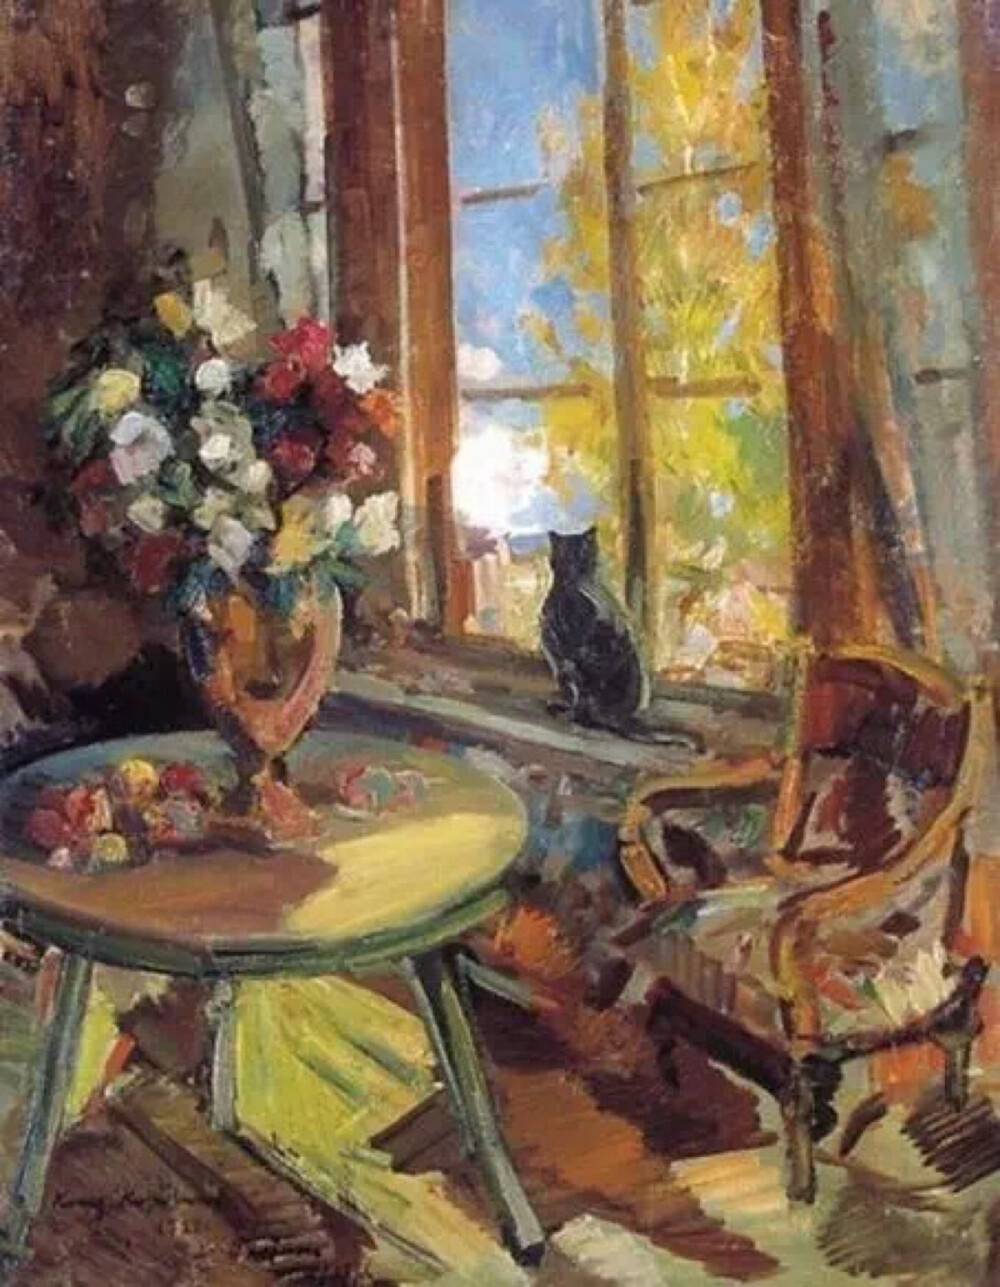 图为俄罗斯印象派大师康斯坦丁·柯罗文（Konstantin Korovin，1861-1939）的作品《窗台上的黑猫》。恰到好处的冷暖对比，凸显着这生灵与生俱来的神秘与孤独，也让一丝清冷在斑驳柔光间愈融化、愈清晰。窗楹分割了绚烂的秋景与凝望的剪影，却斩不断斜阳里的缱绻愁意。